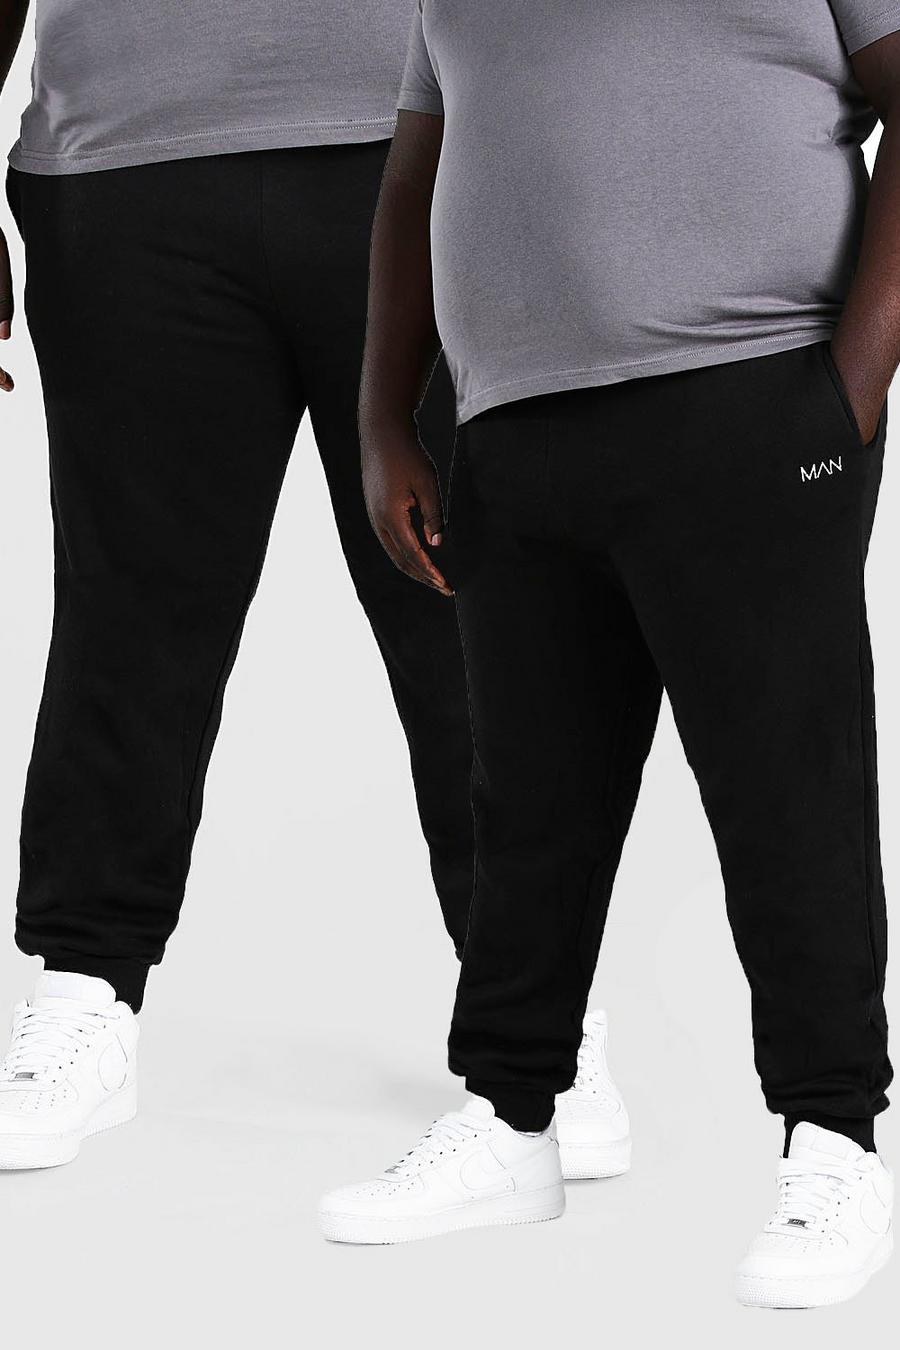 שחור מארז 2 מכנסי ריצה סקיני לגברים גדולים וגבוהים עם כיתוב MAN בקו חוצה image number 1